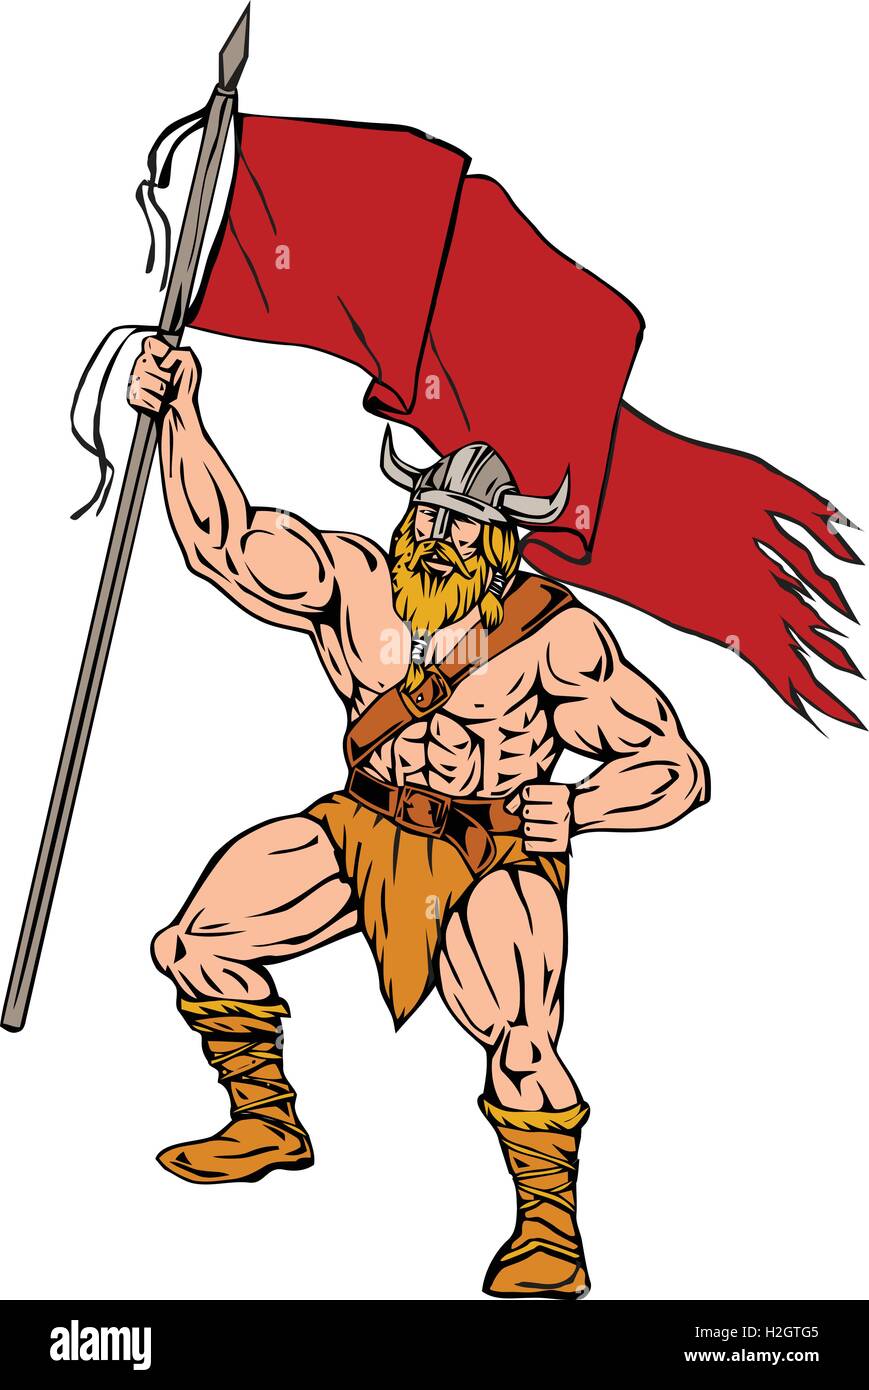 Abbildung von einem Norseman Viking Warrior Raider Barbar gehörnter Helm mit Bart hält schwingt rote Fahne angezeigt Stock Vektor